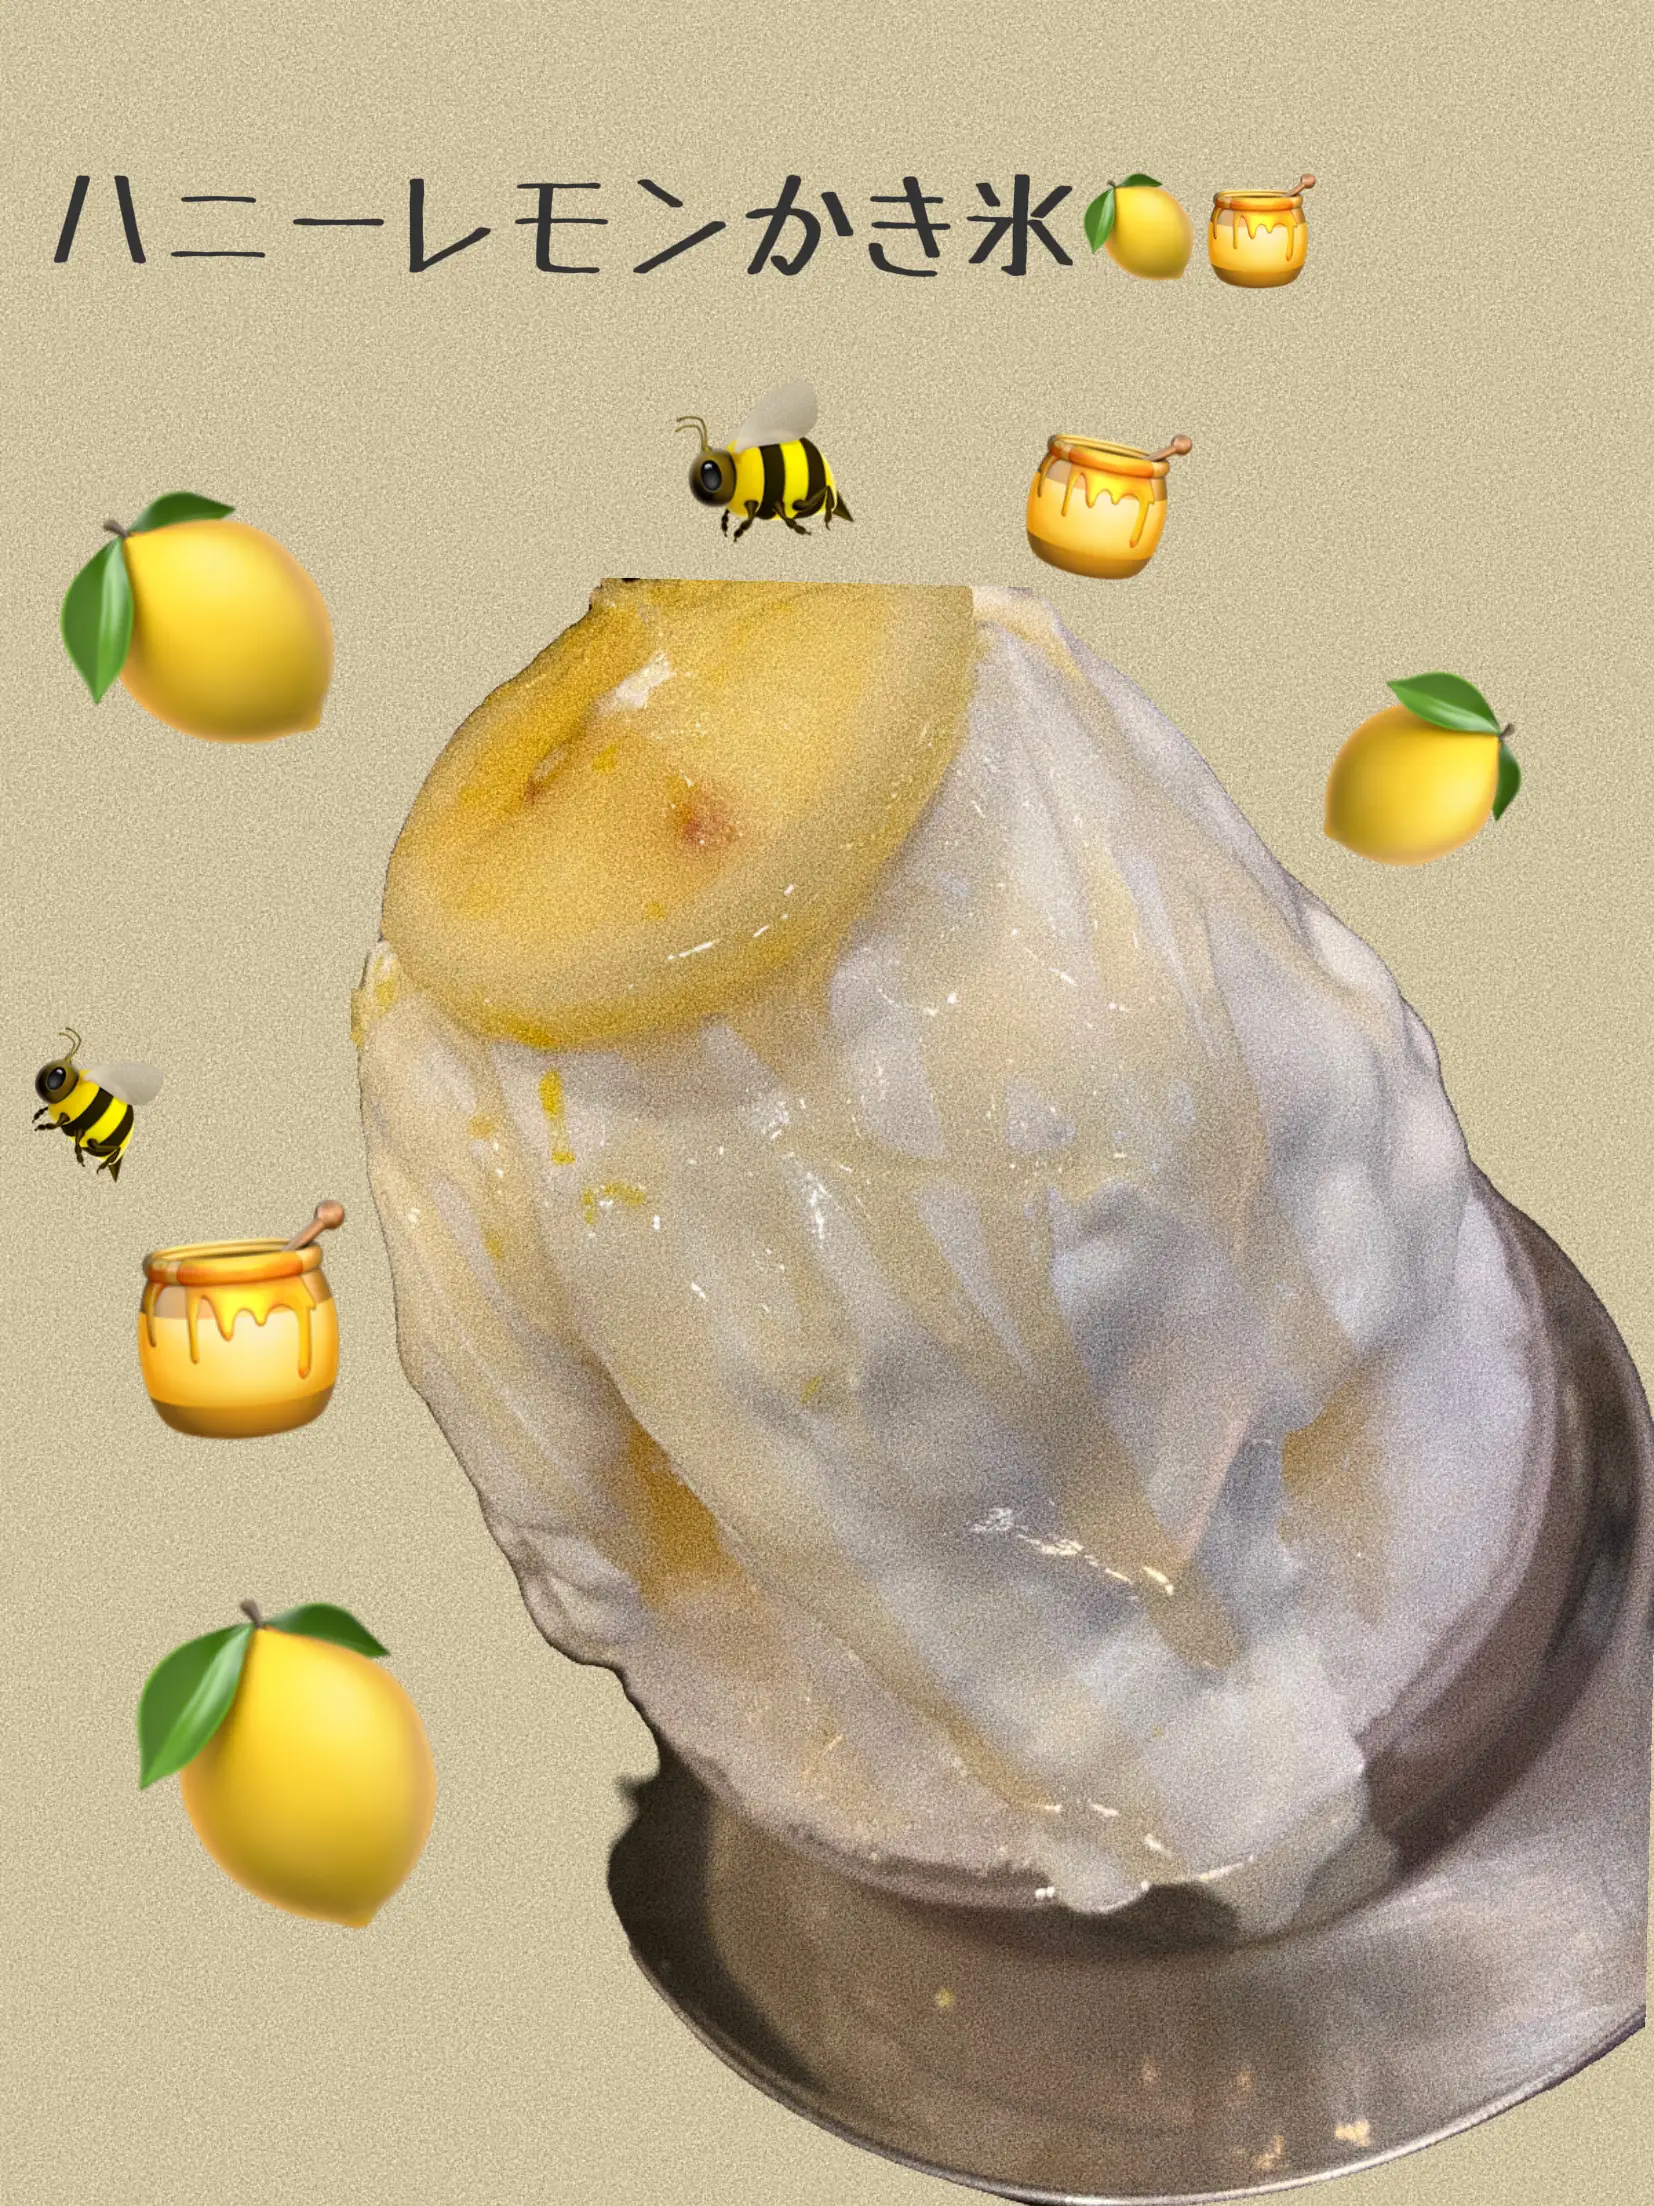 ハニーレモンかき氷に関する最新の人気投稿 Lemon8